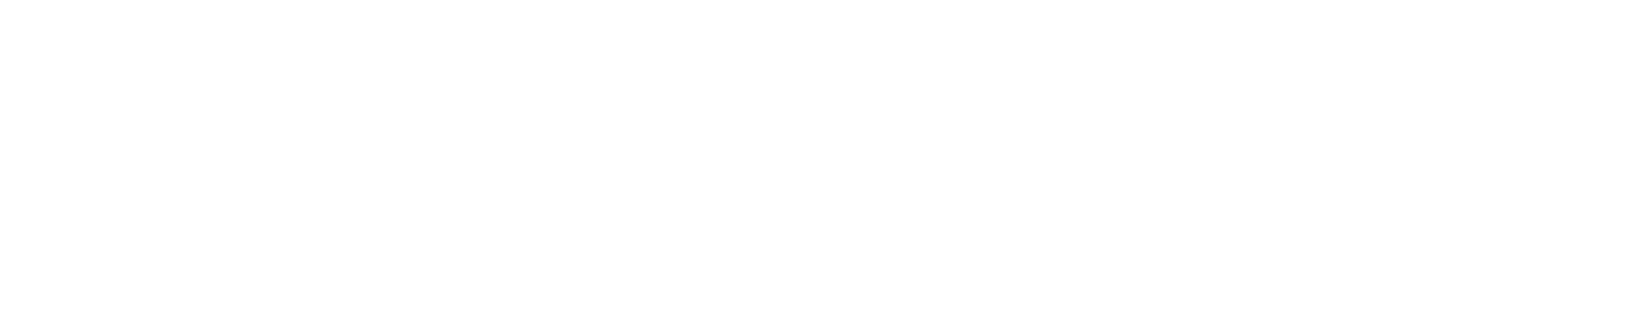 Robinhood logo large for dark backgrounds (transparent PNG)